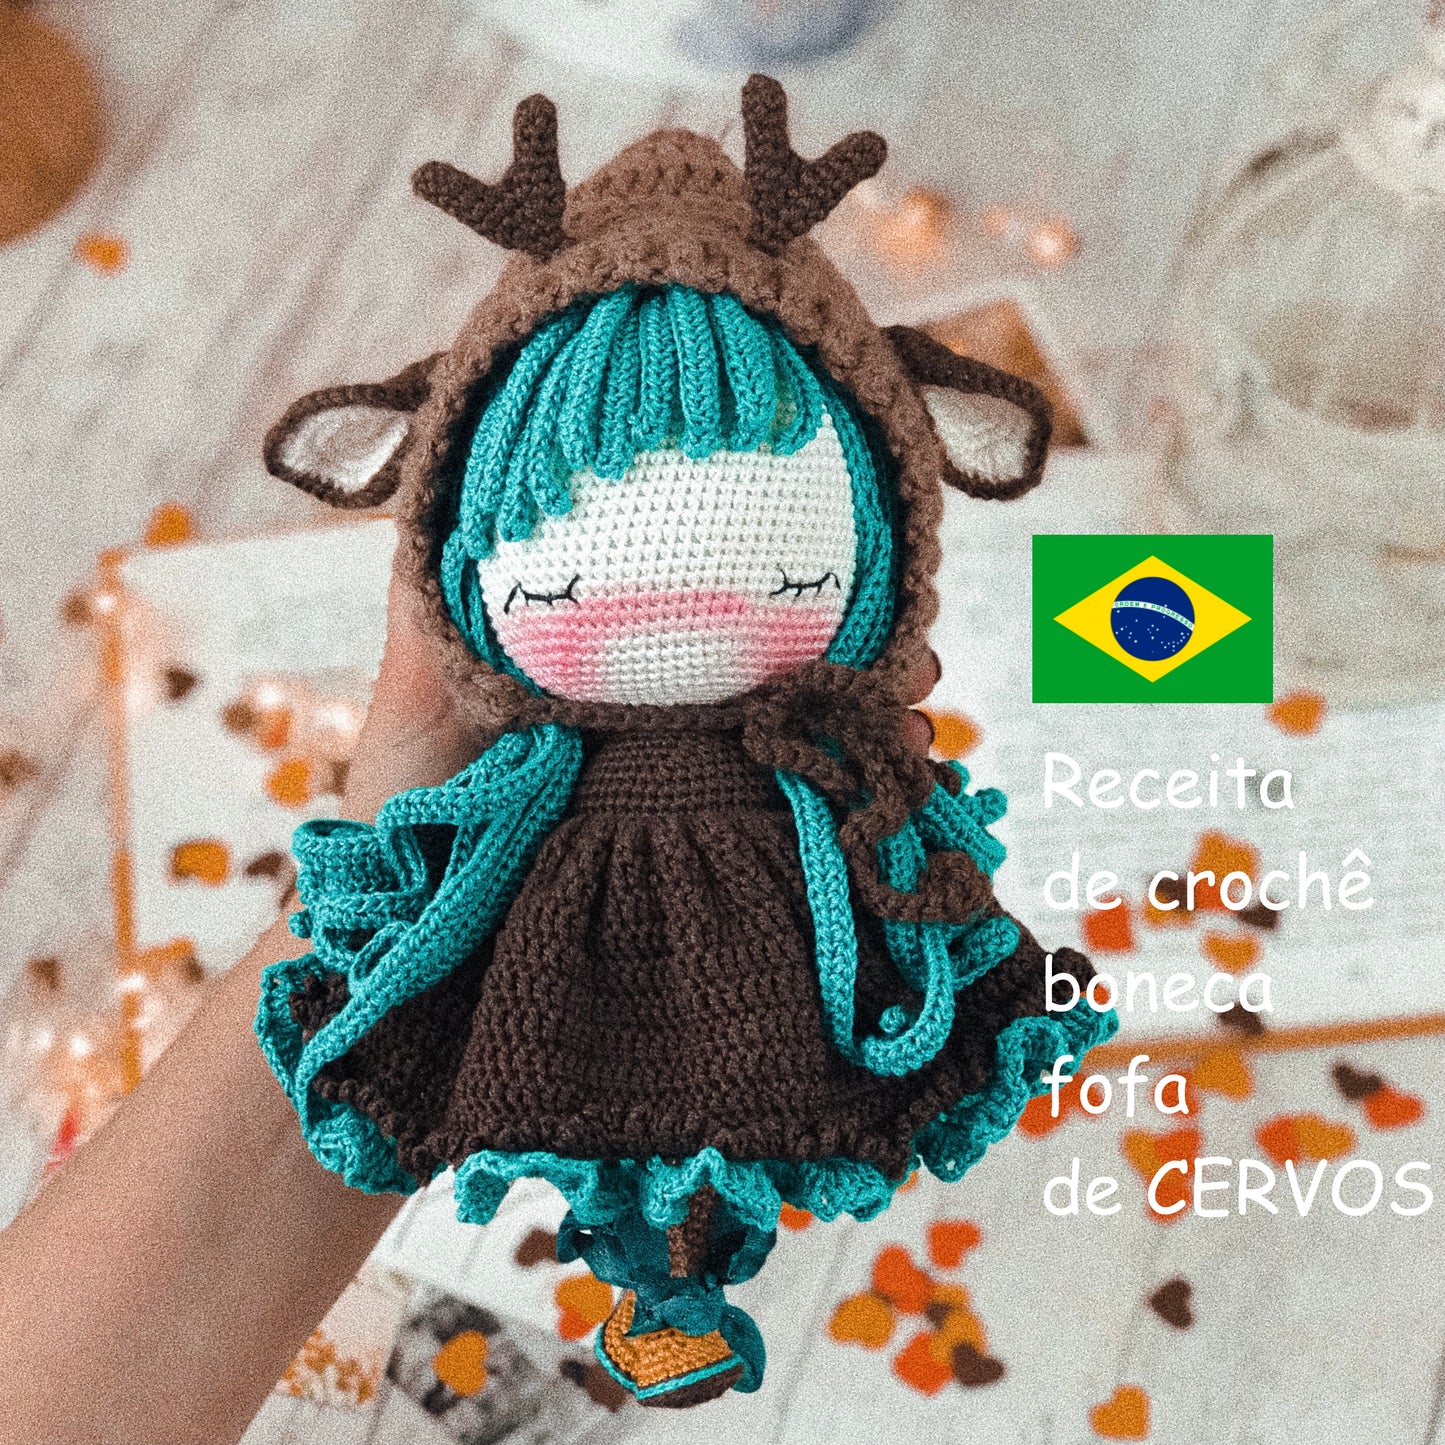 PDF Receita de crochê: boneca fofa de CERVOS Portuguesa Brasileira